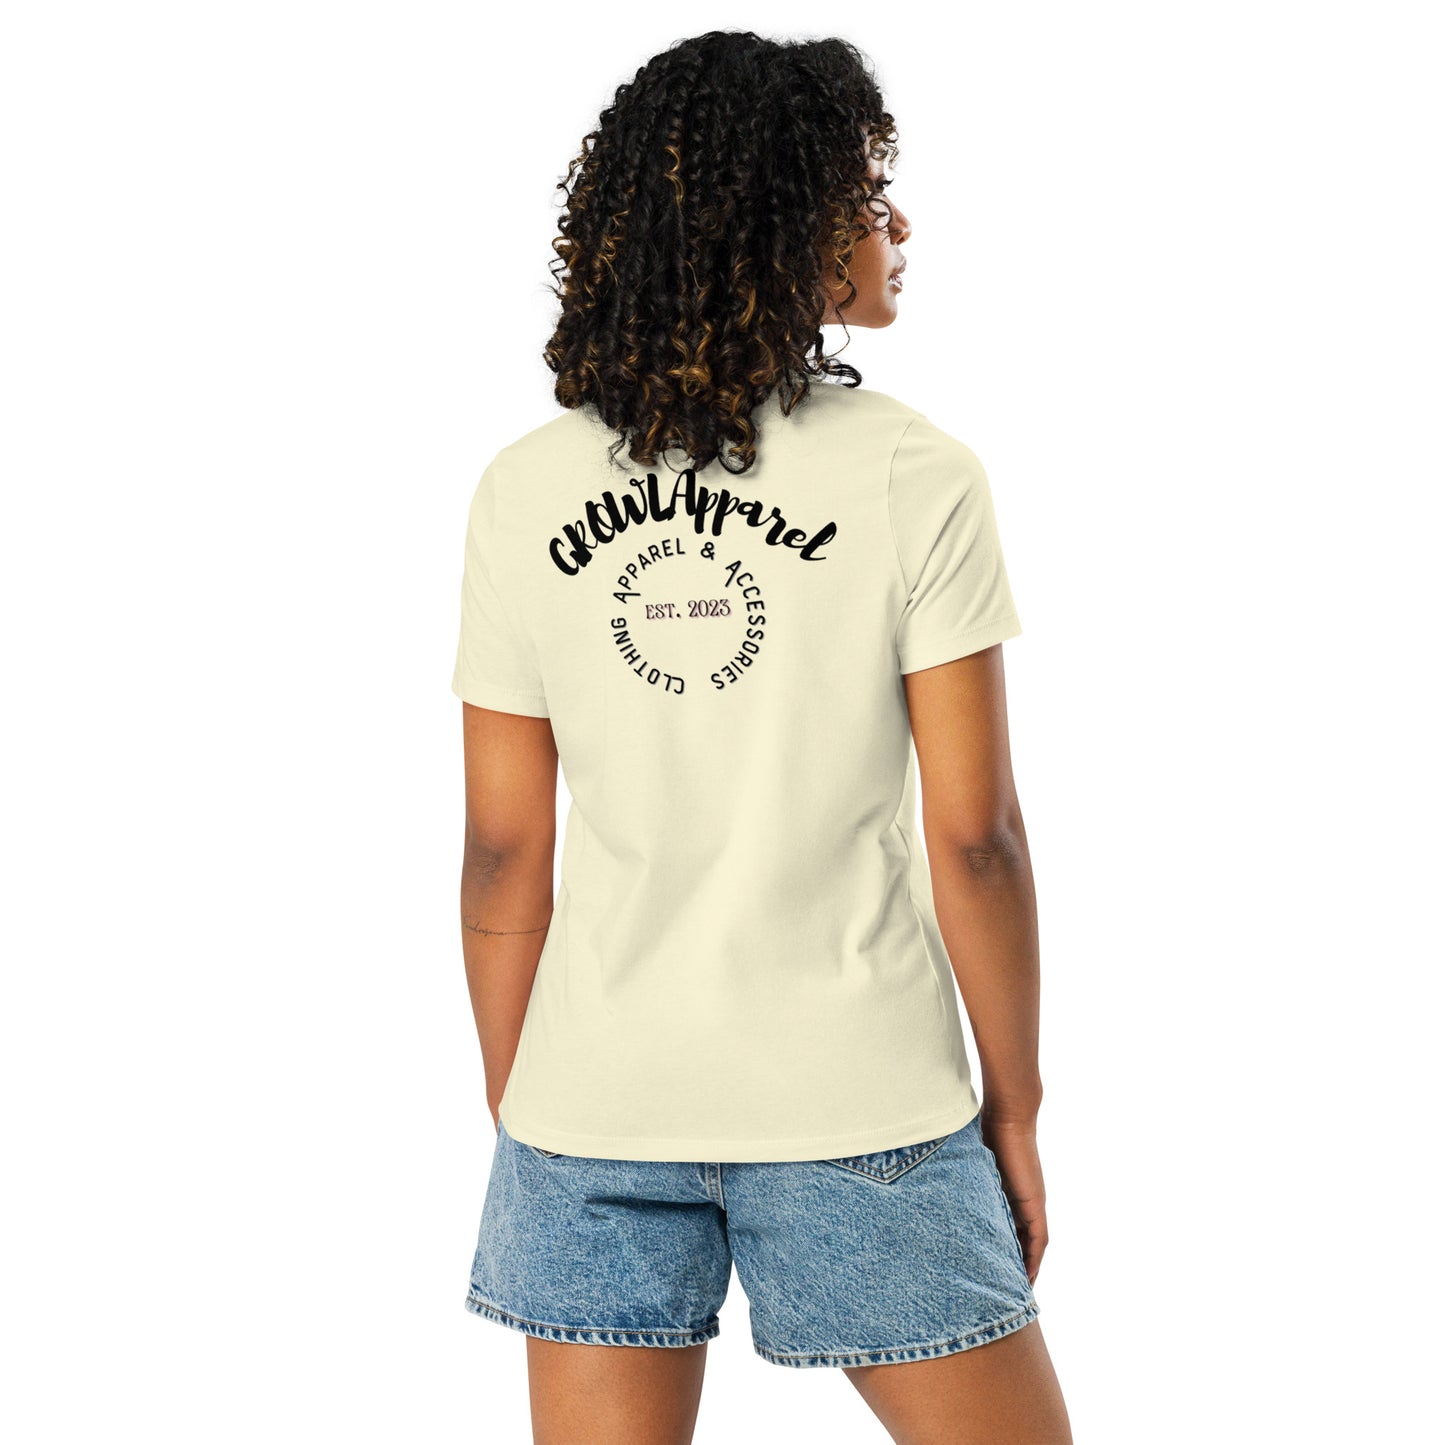 GROWLApparel New LOGO - Women's Relaxed T-Shirt